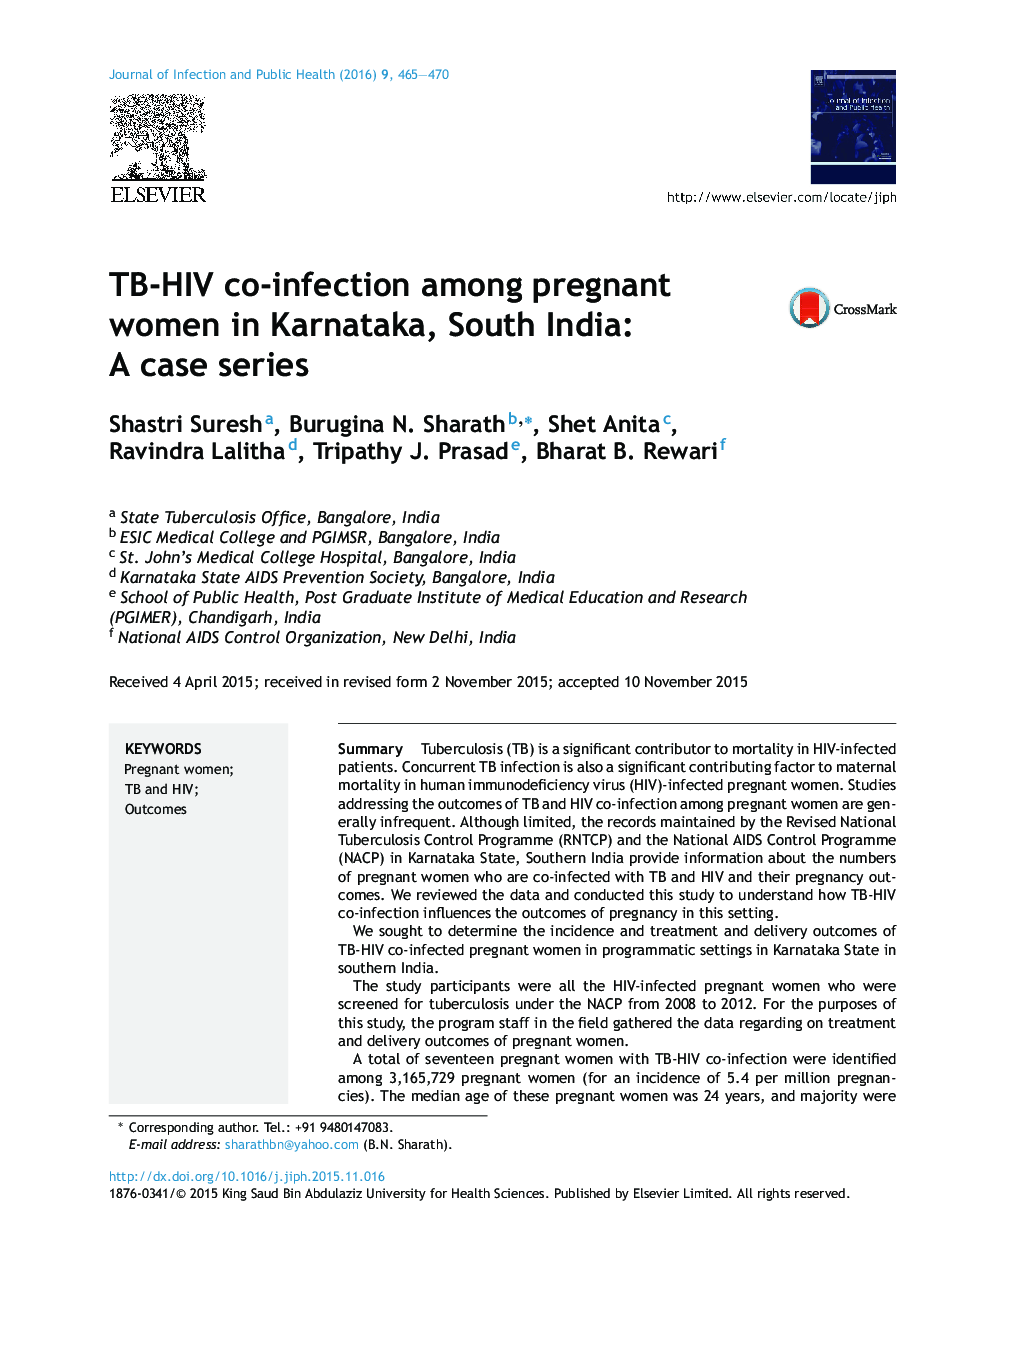 عفونت TB-HIV در زنان باردار در کارناتاکا، جنوب هند: یک سری موارد